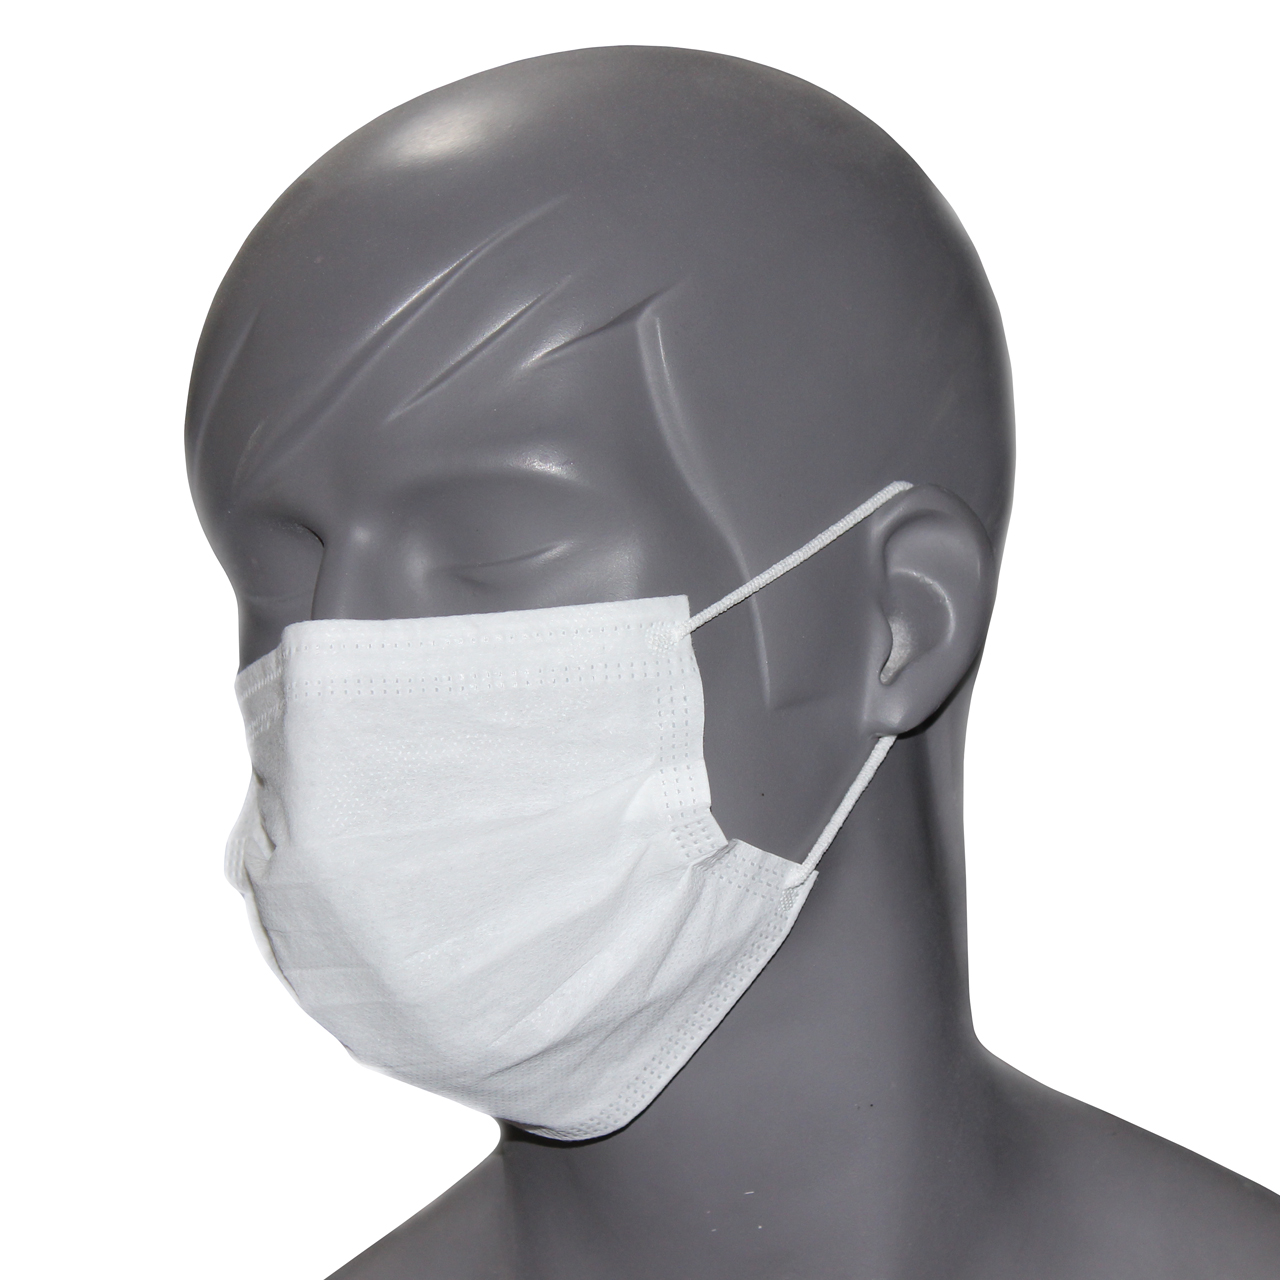 ماسک تنفسی می ماسک مدل 6020 بسته ۵۰ عددی